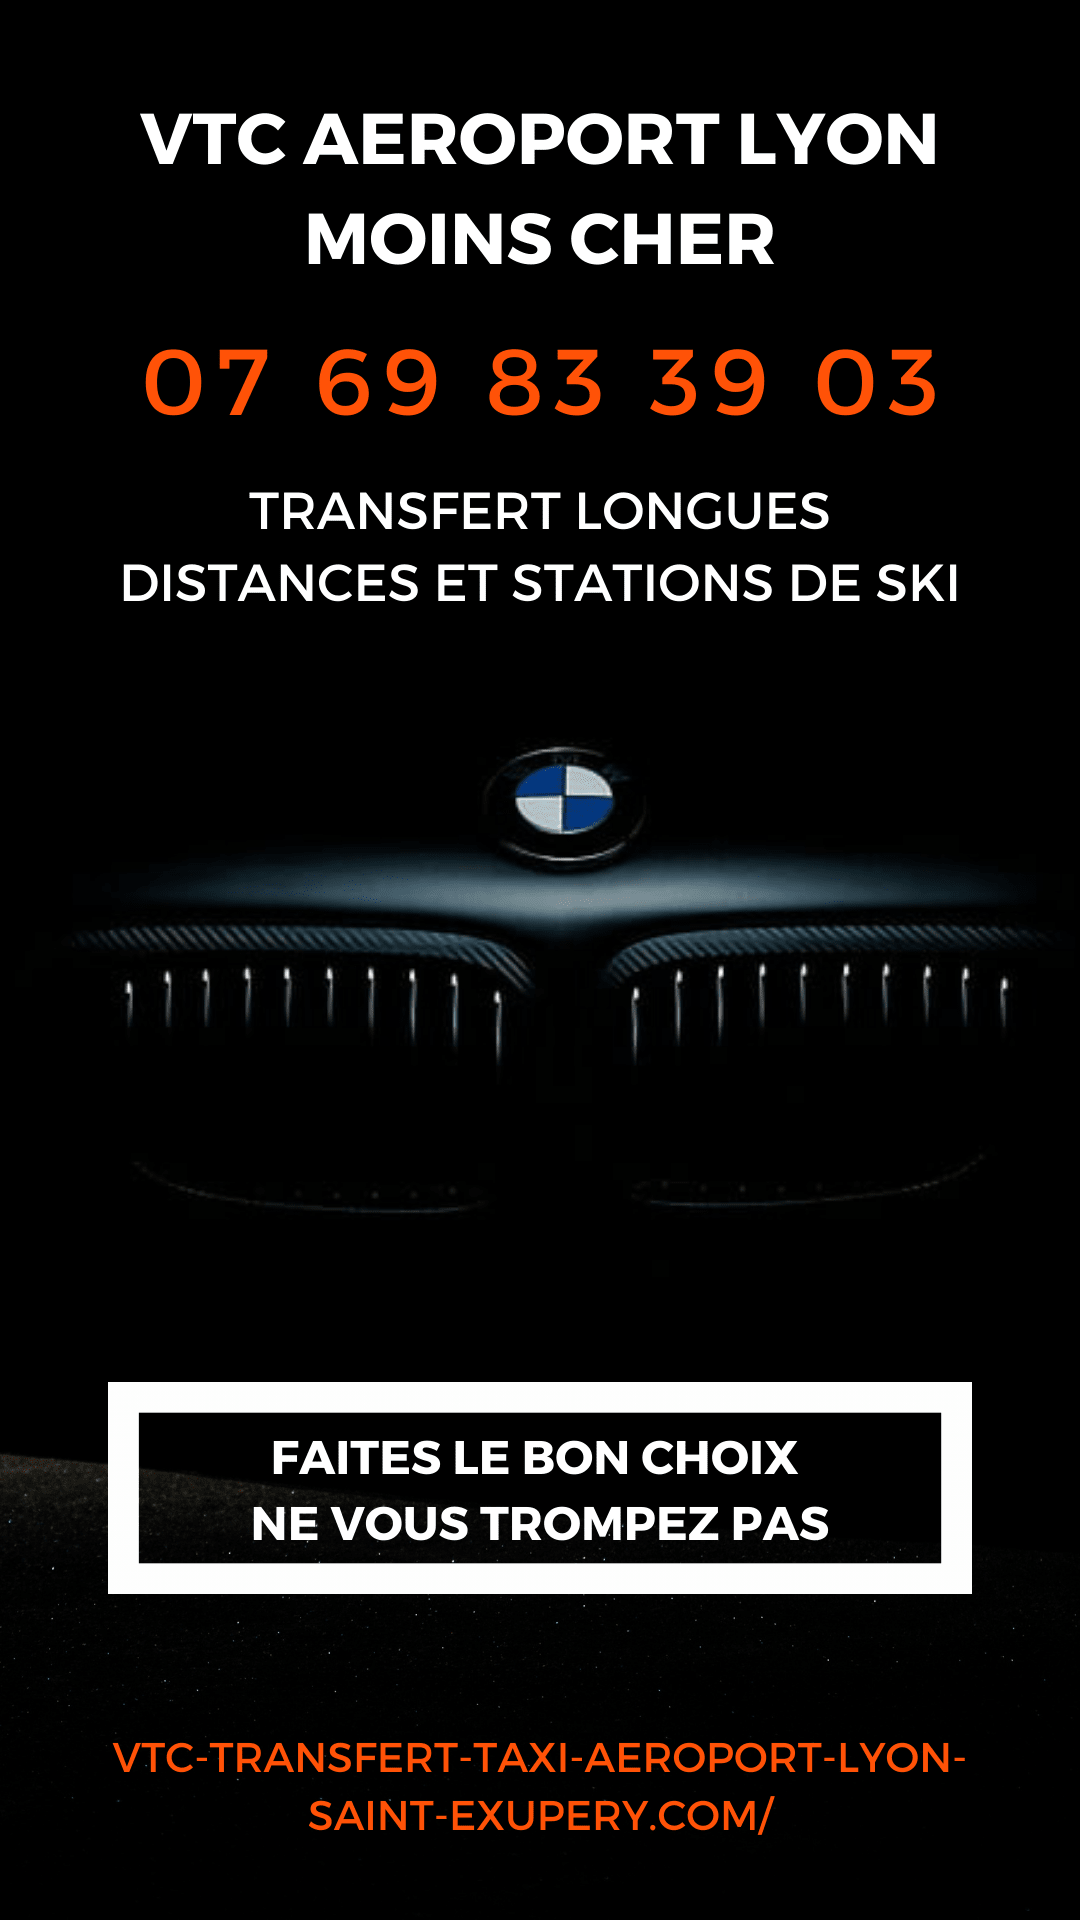 vtc-transfert-taxi-aeroport-lyon-saint-exupery.